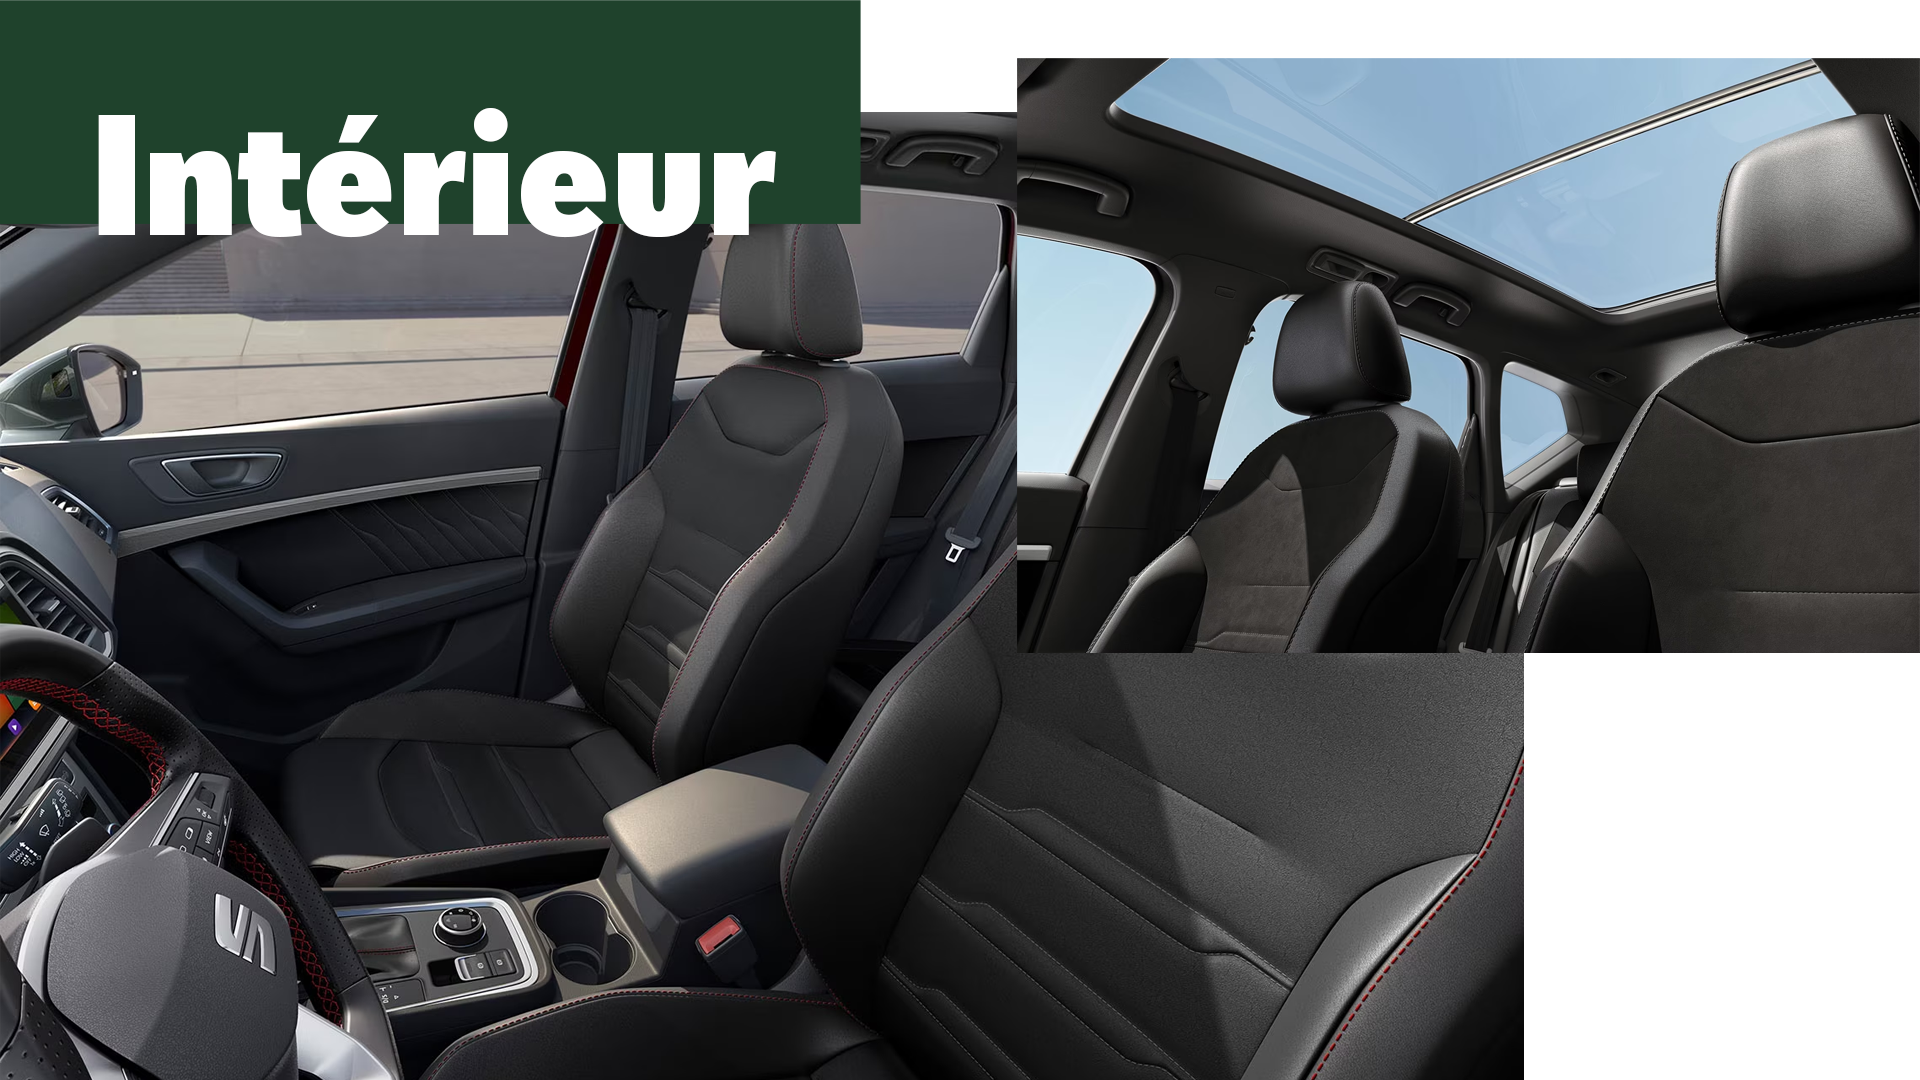 SEAT Ateca - Le SUV Urbain qui surprend par son habitacle sophistiqué grâce aux touches d’aluminium à l’avant comme à l’arrière.